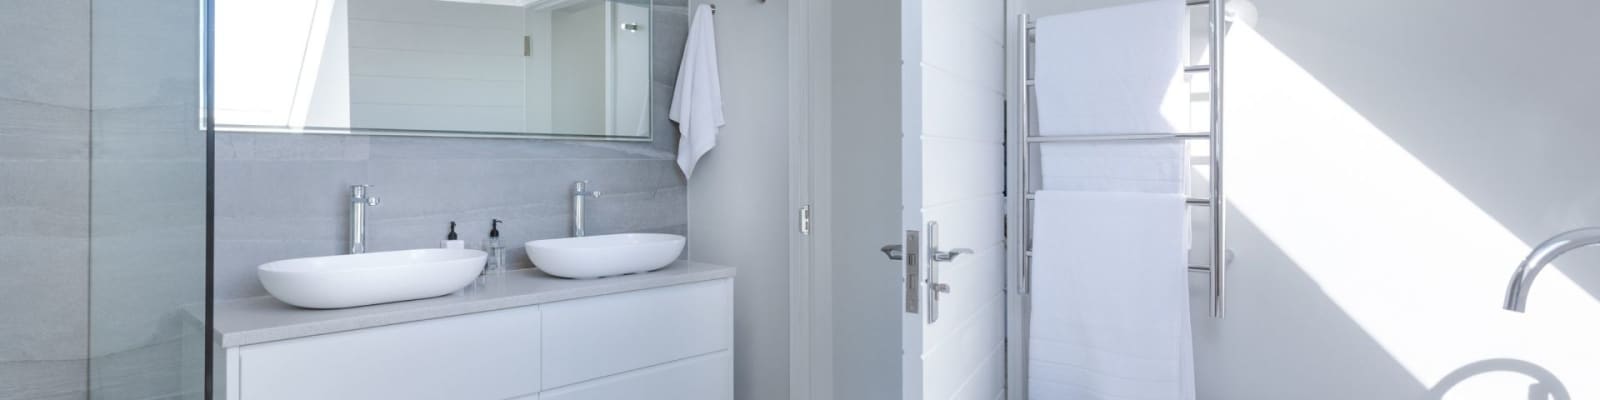 bathroom renovations pros in Roodepoort